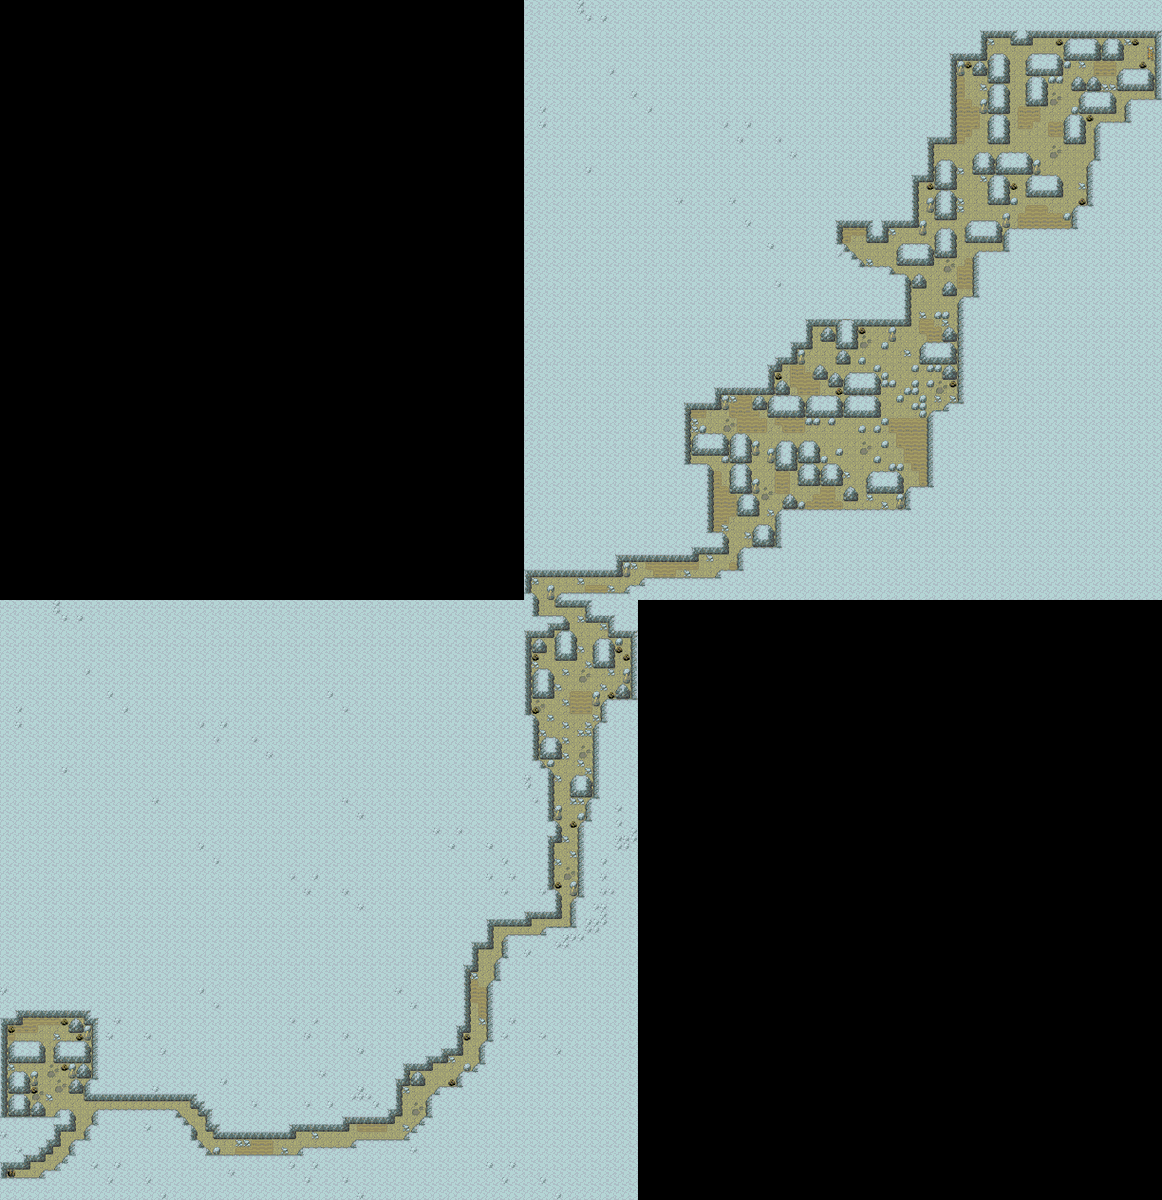 Mapa de una de las nuevas secundarias que habrá cuando salga Hoenn.

Esta podrá hacerse después de acabar el DLC, cuando los mapas de la Neo Kanto aparecen.

Me gustaría añadir unas 2-3 nuevas secundarias en la 'Neo Kanto', y que Hoenn salga con otras 3-4, veremos...